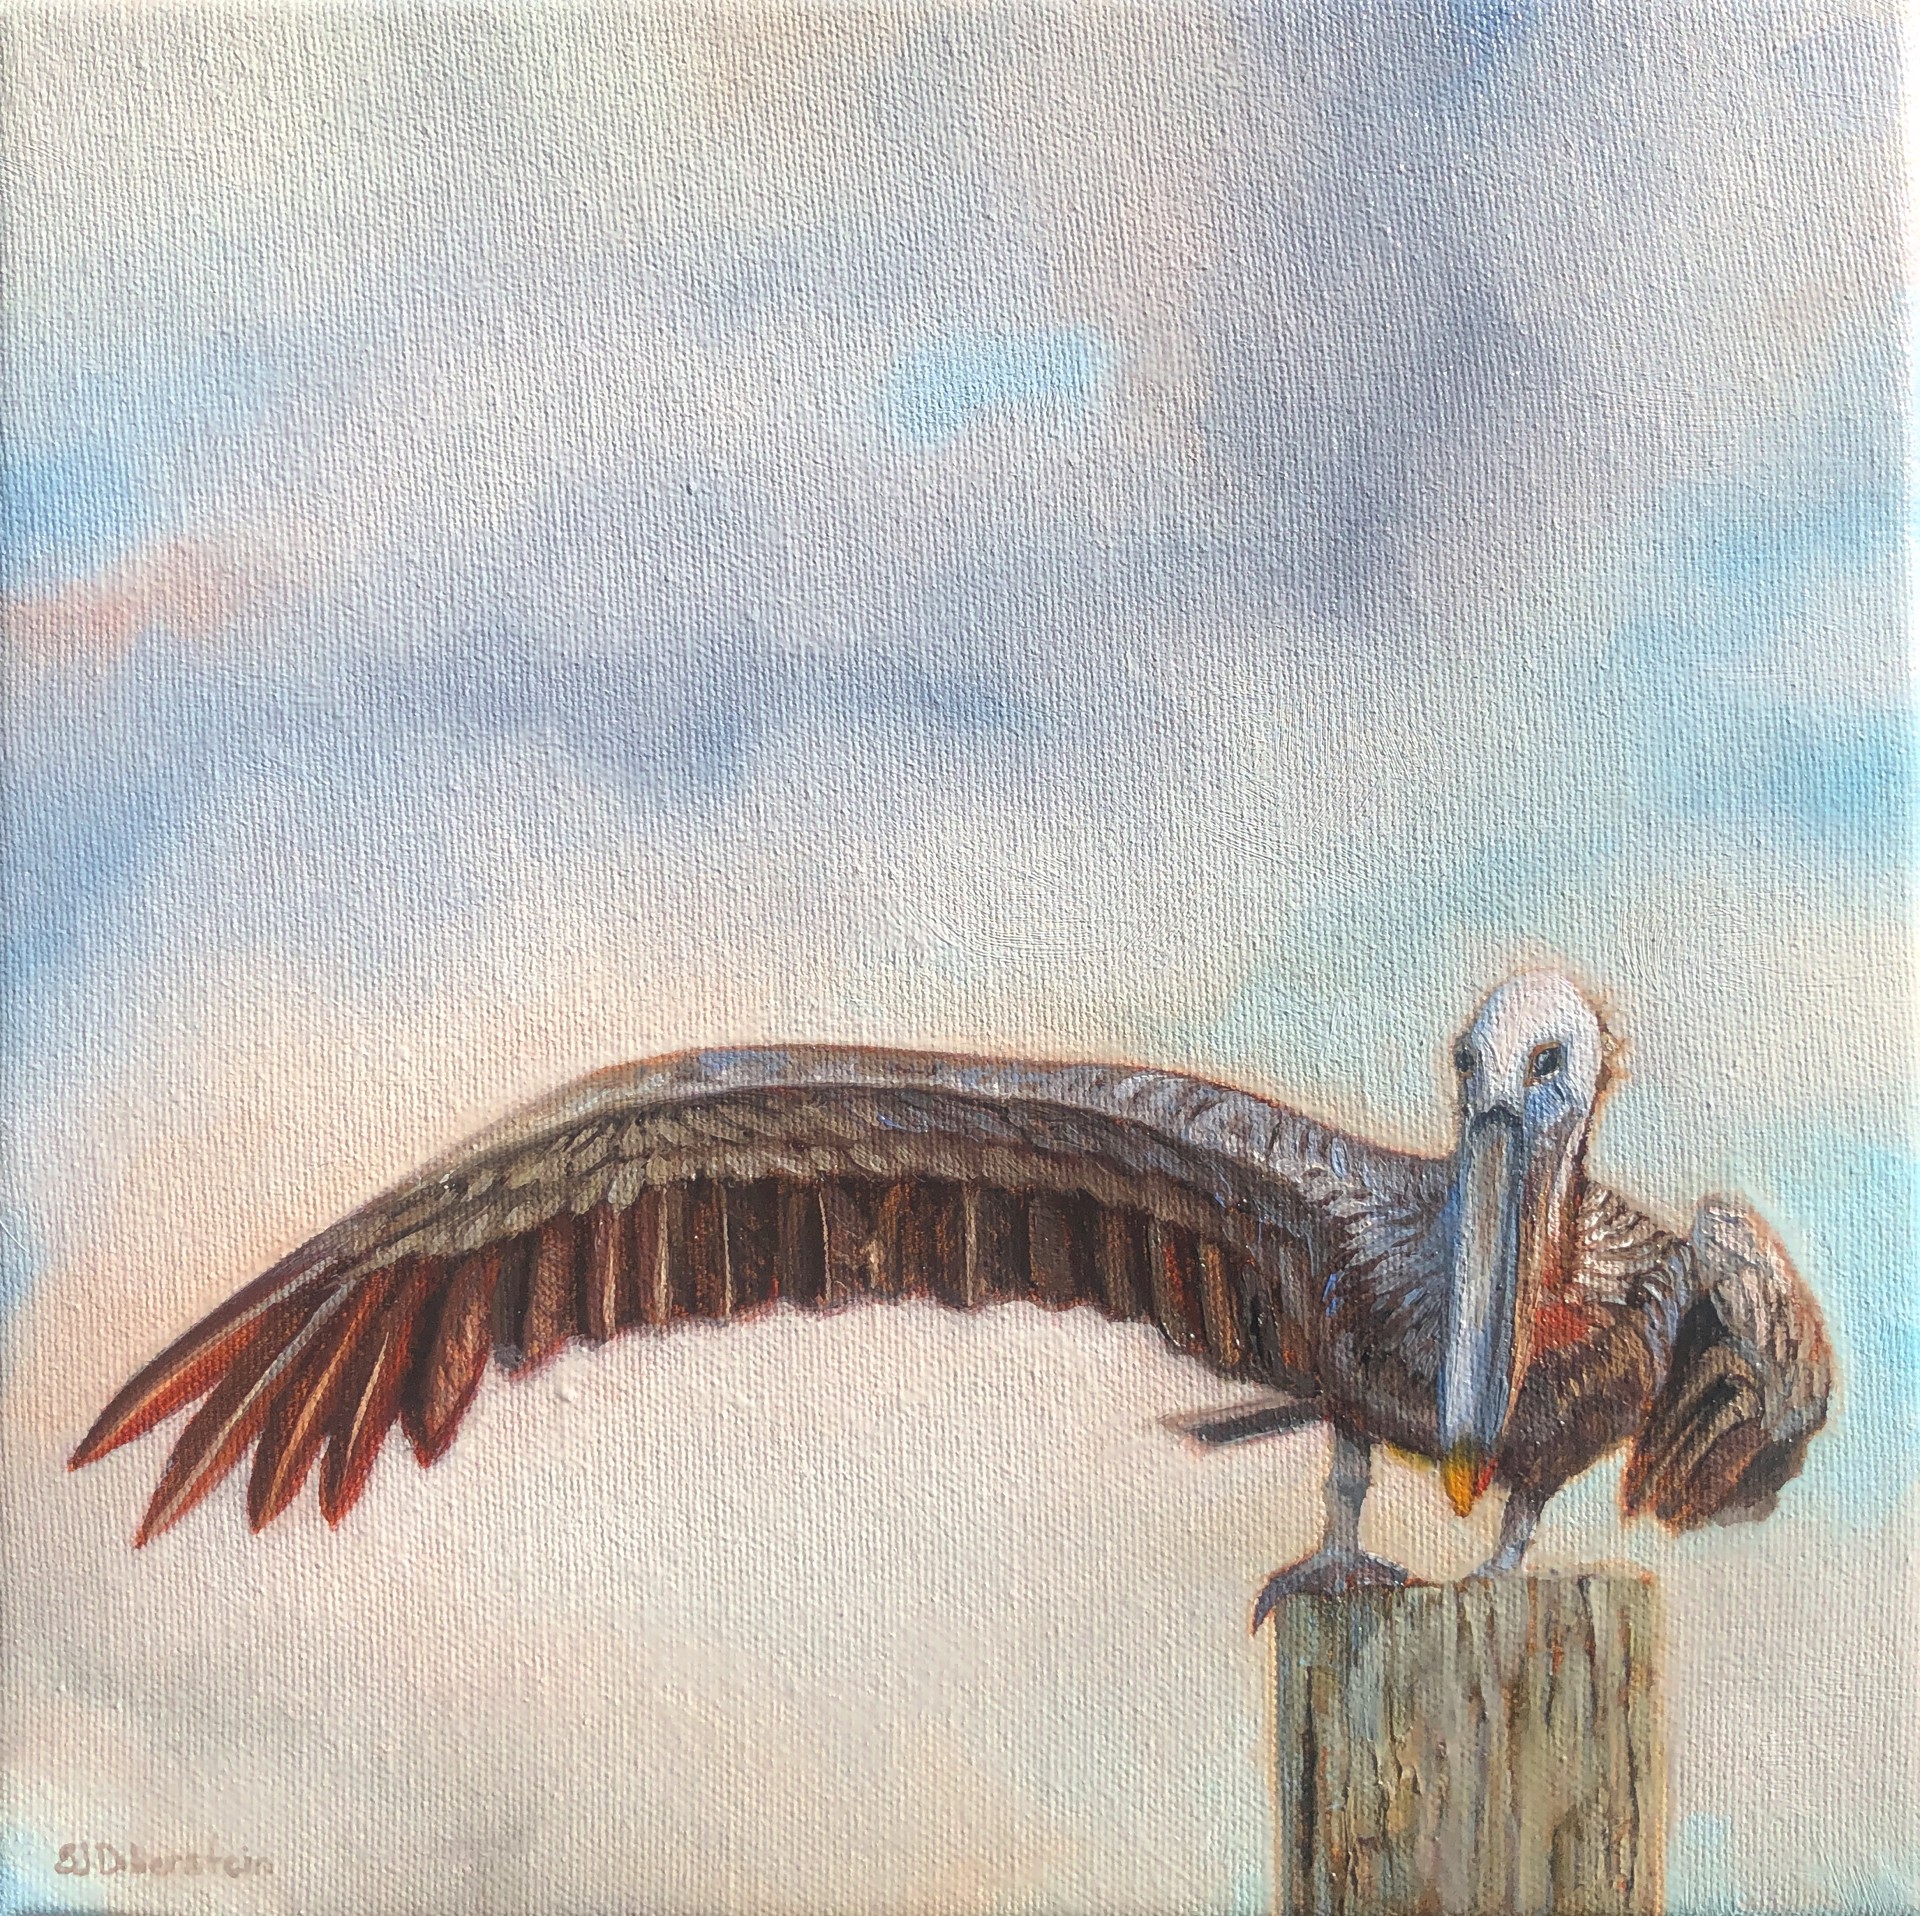 Winging It, Study by Sara Jane Doberstein